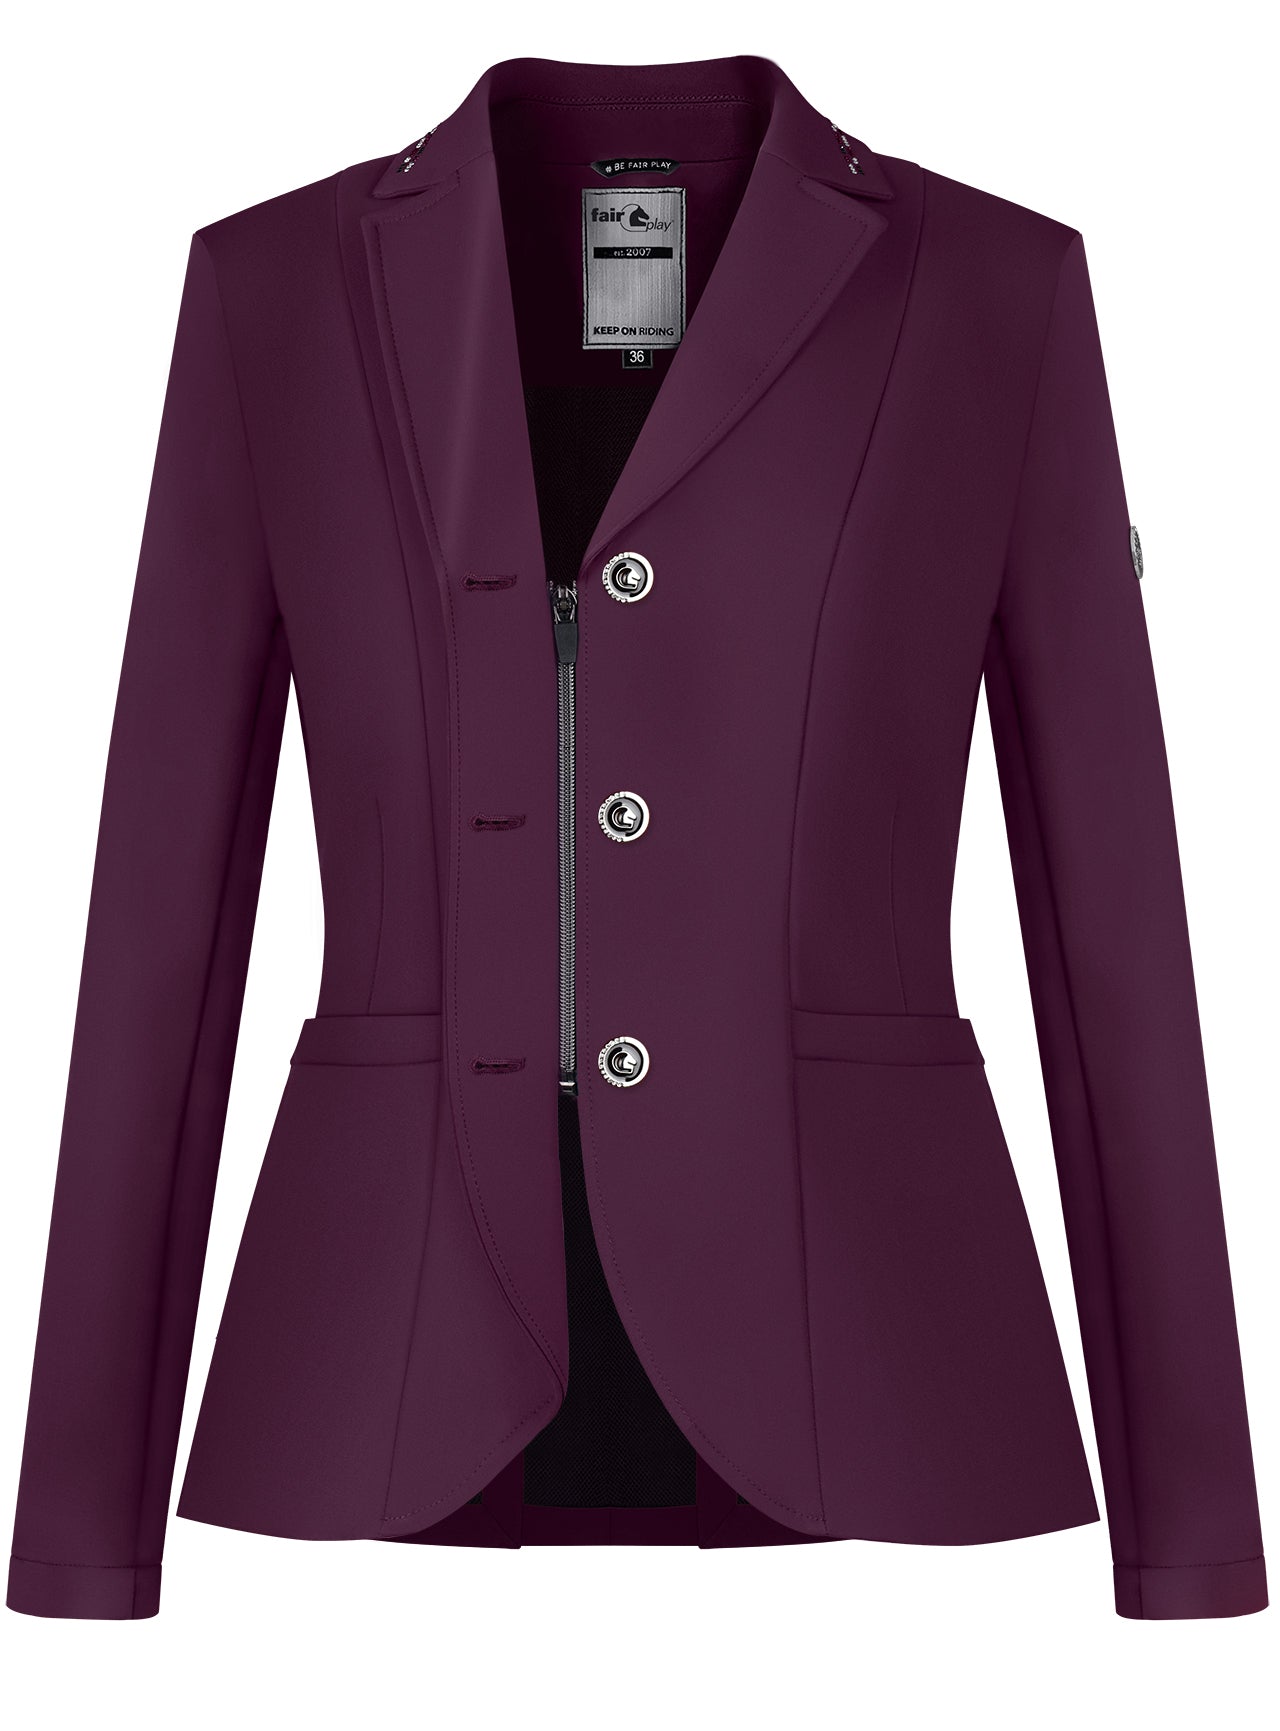 Ladies Show Jacket with inner zip in purple